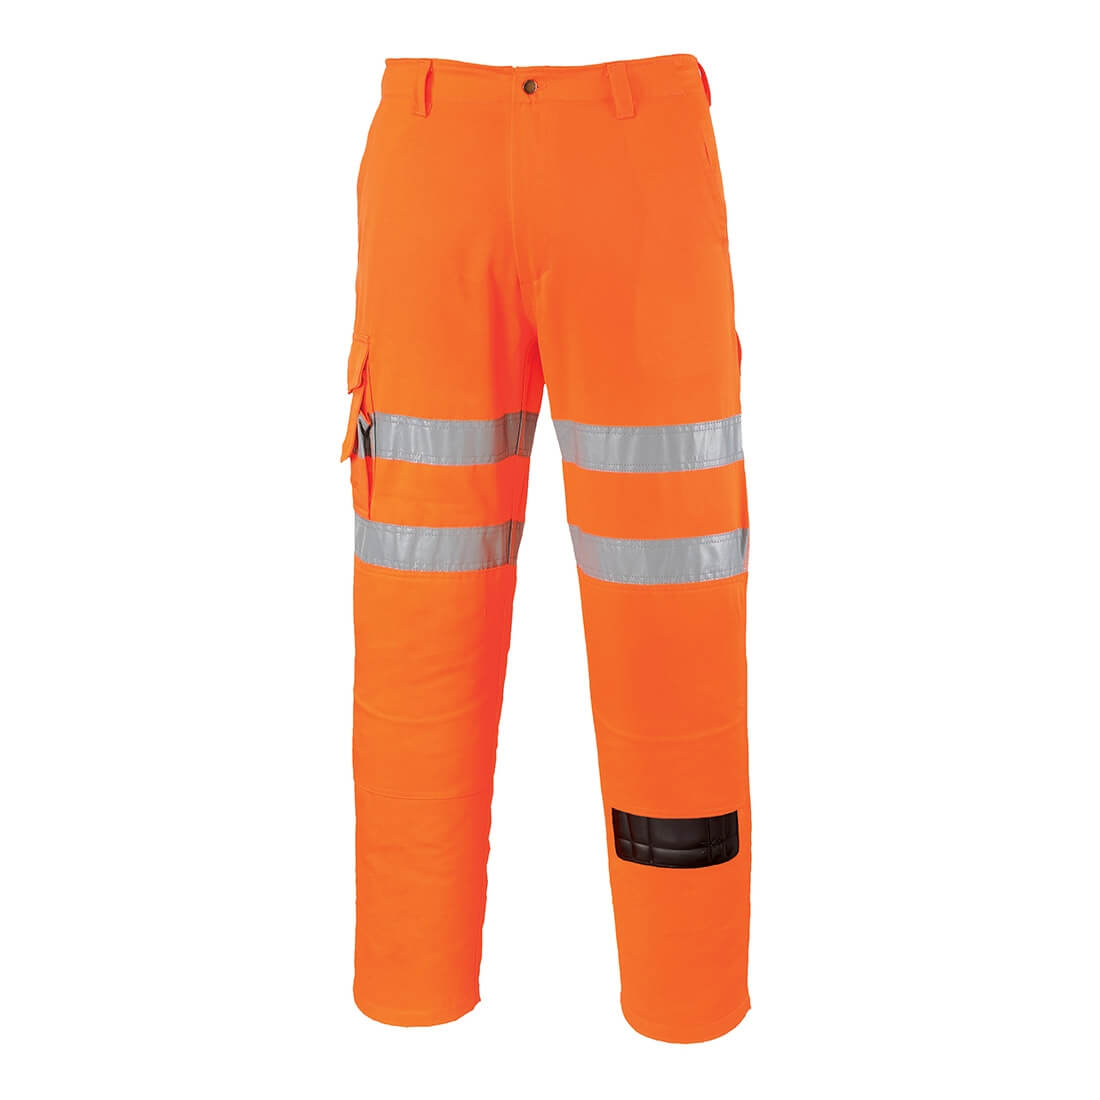 Pantalon Métiers du Rail - Les vêtements de protection